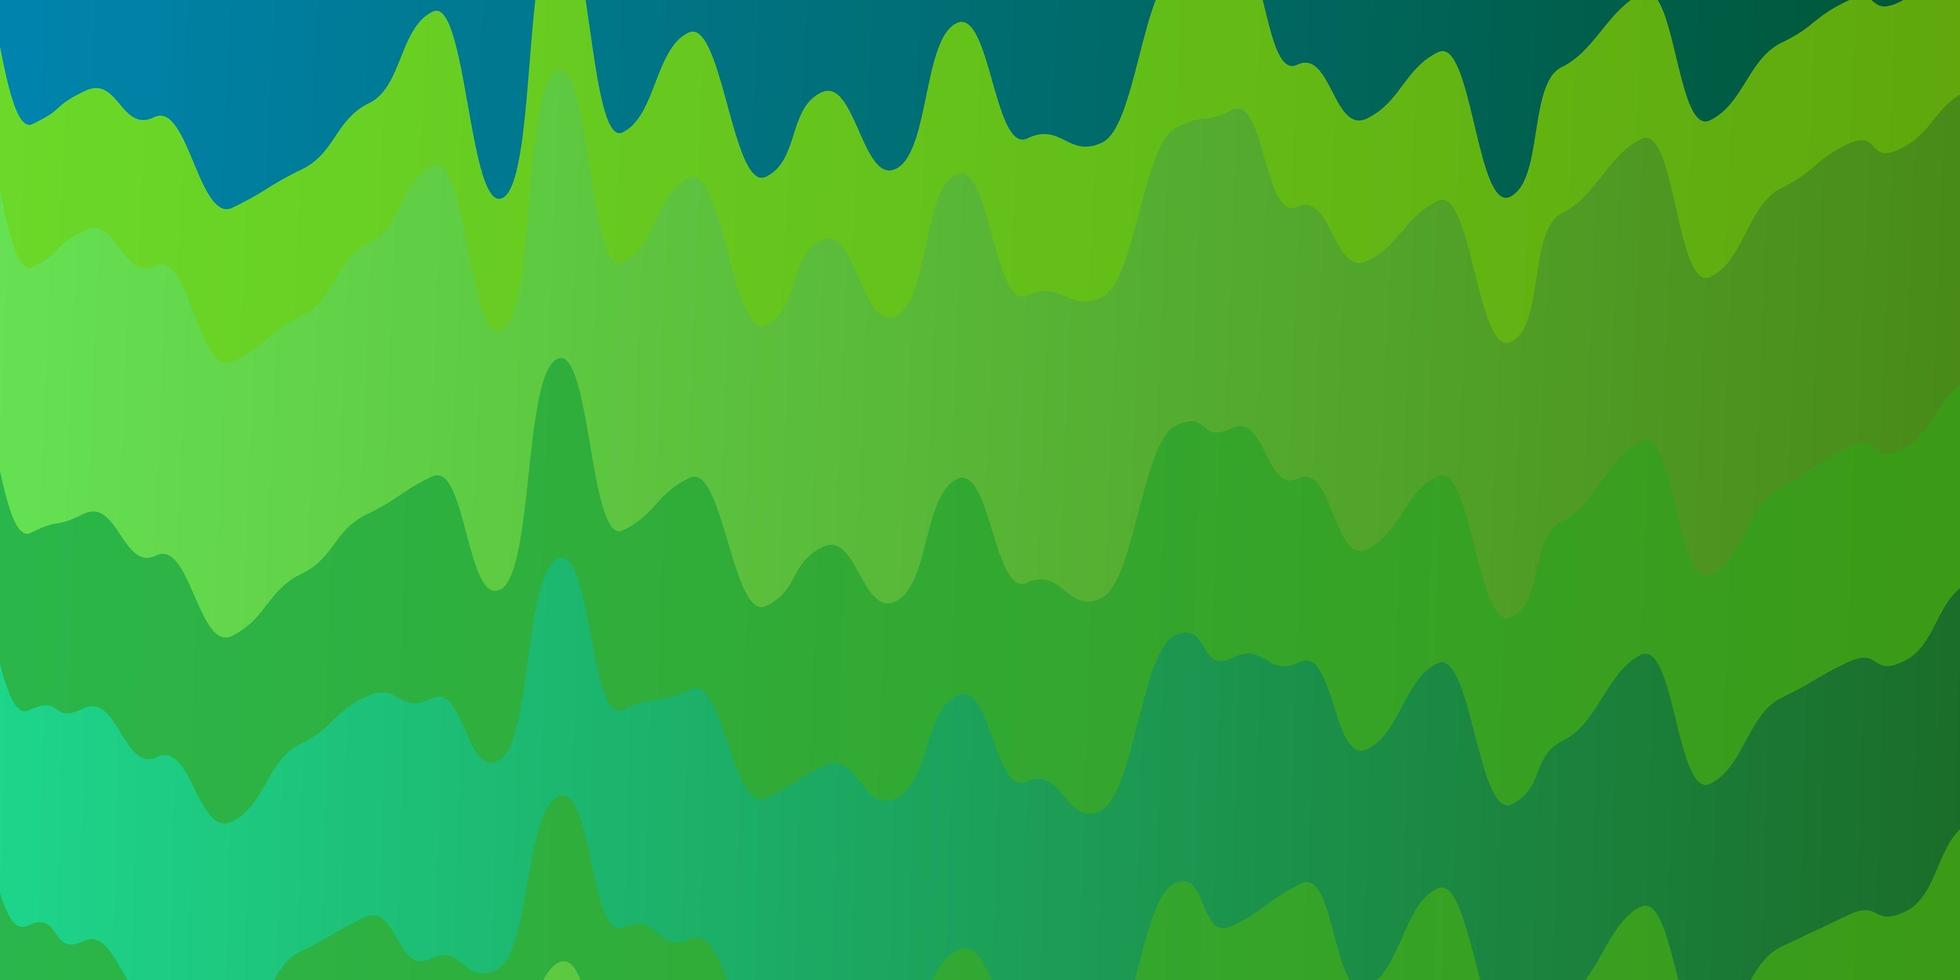 mehrfarbige grüne Schablone mit Wellenlinien vektor